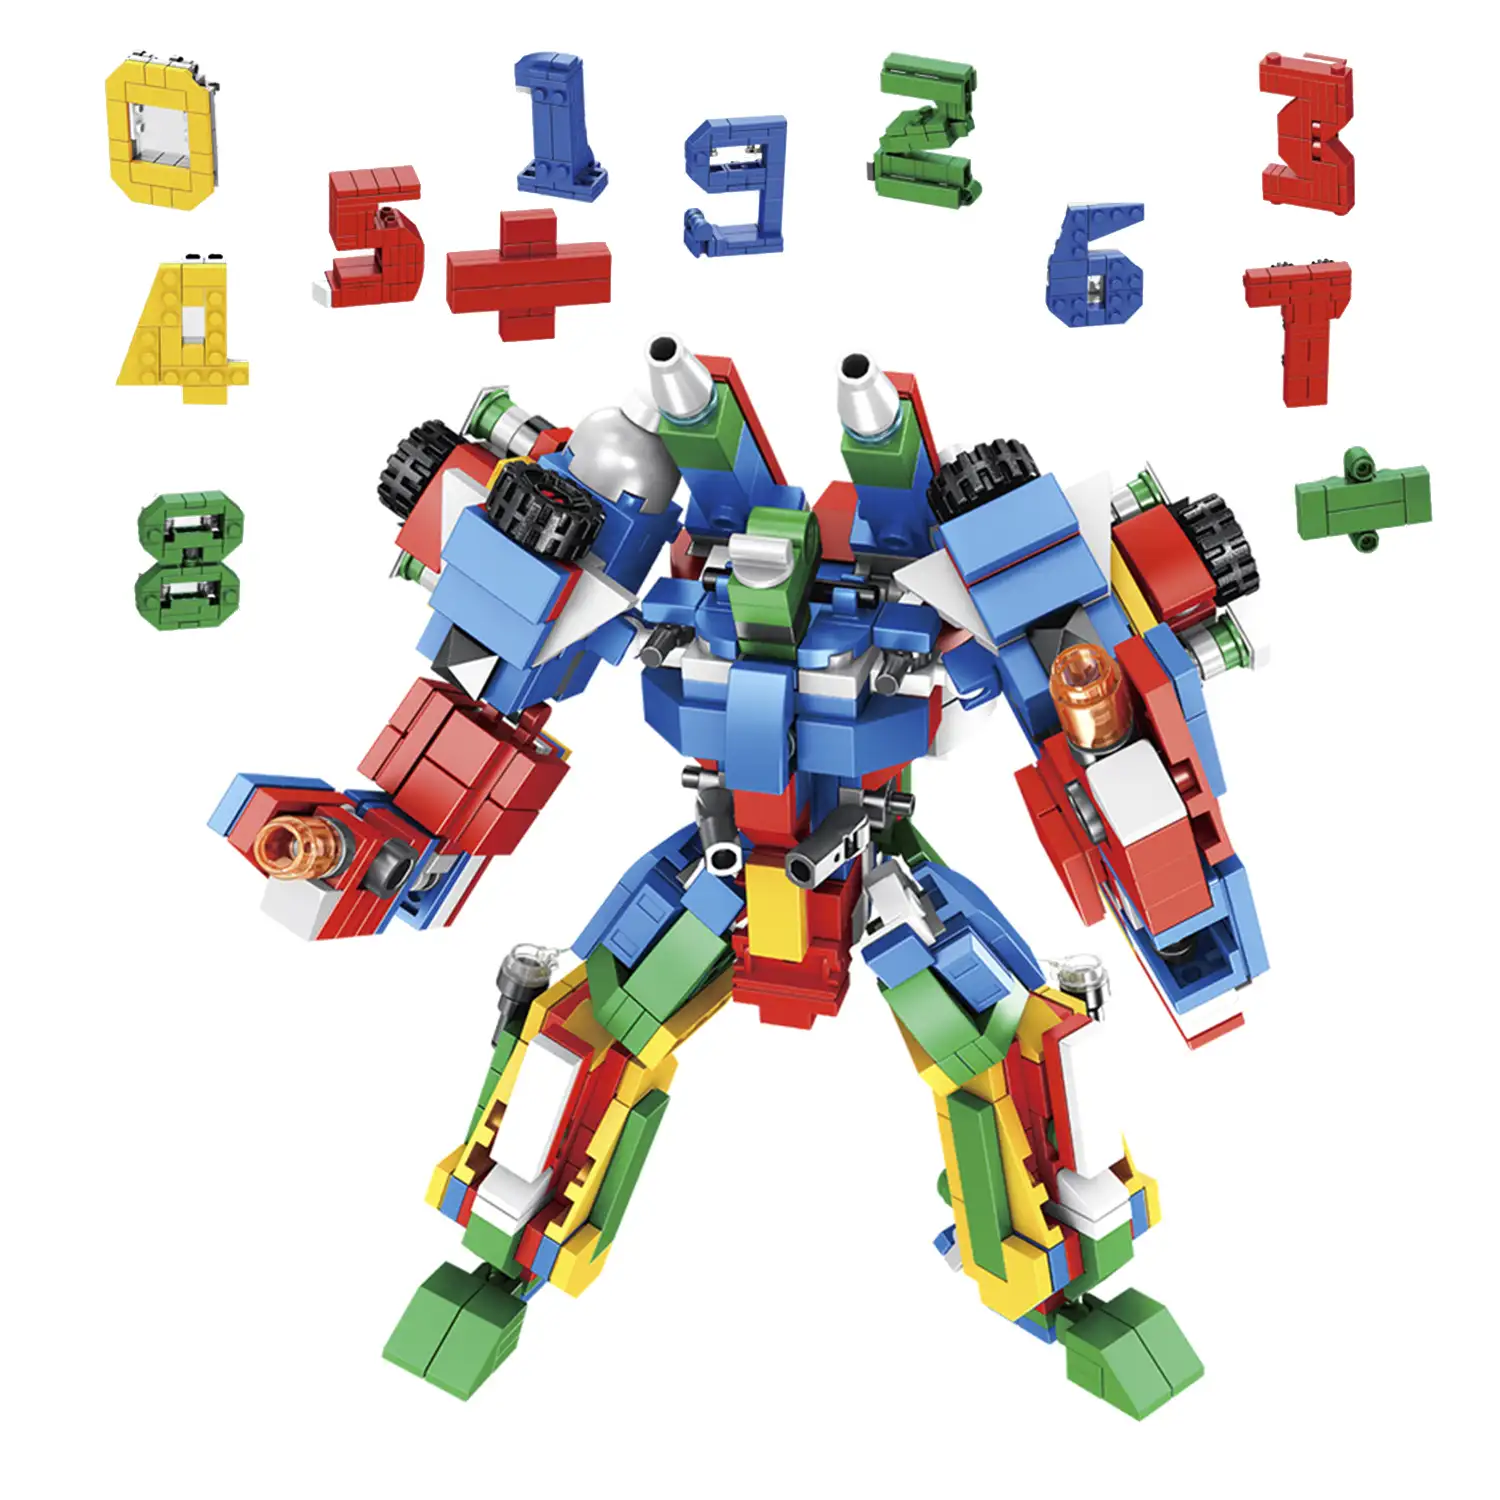 Robot digital 12 en 1, con 570 piezas. Construye 12 modelos individuales con 2 formas cada uno: aprende matemáticas + vehículo.